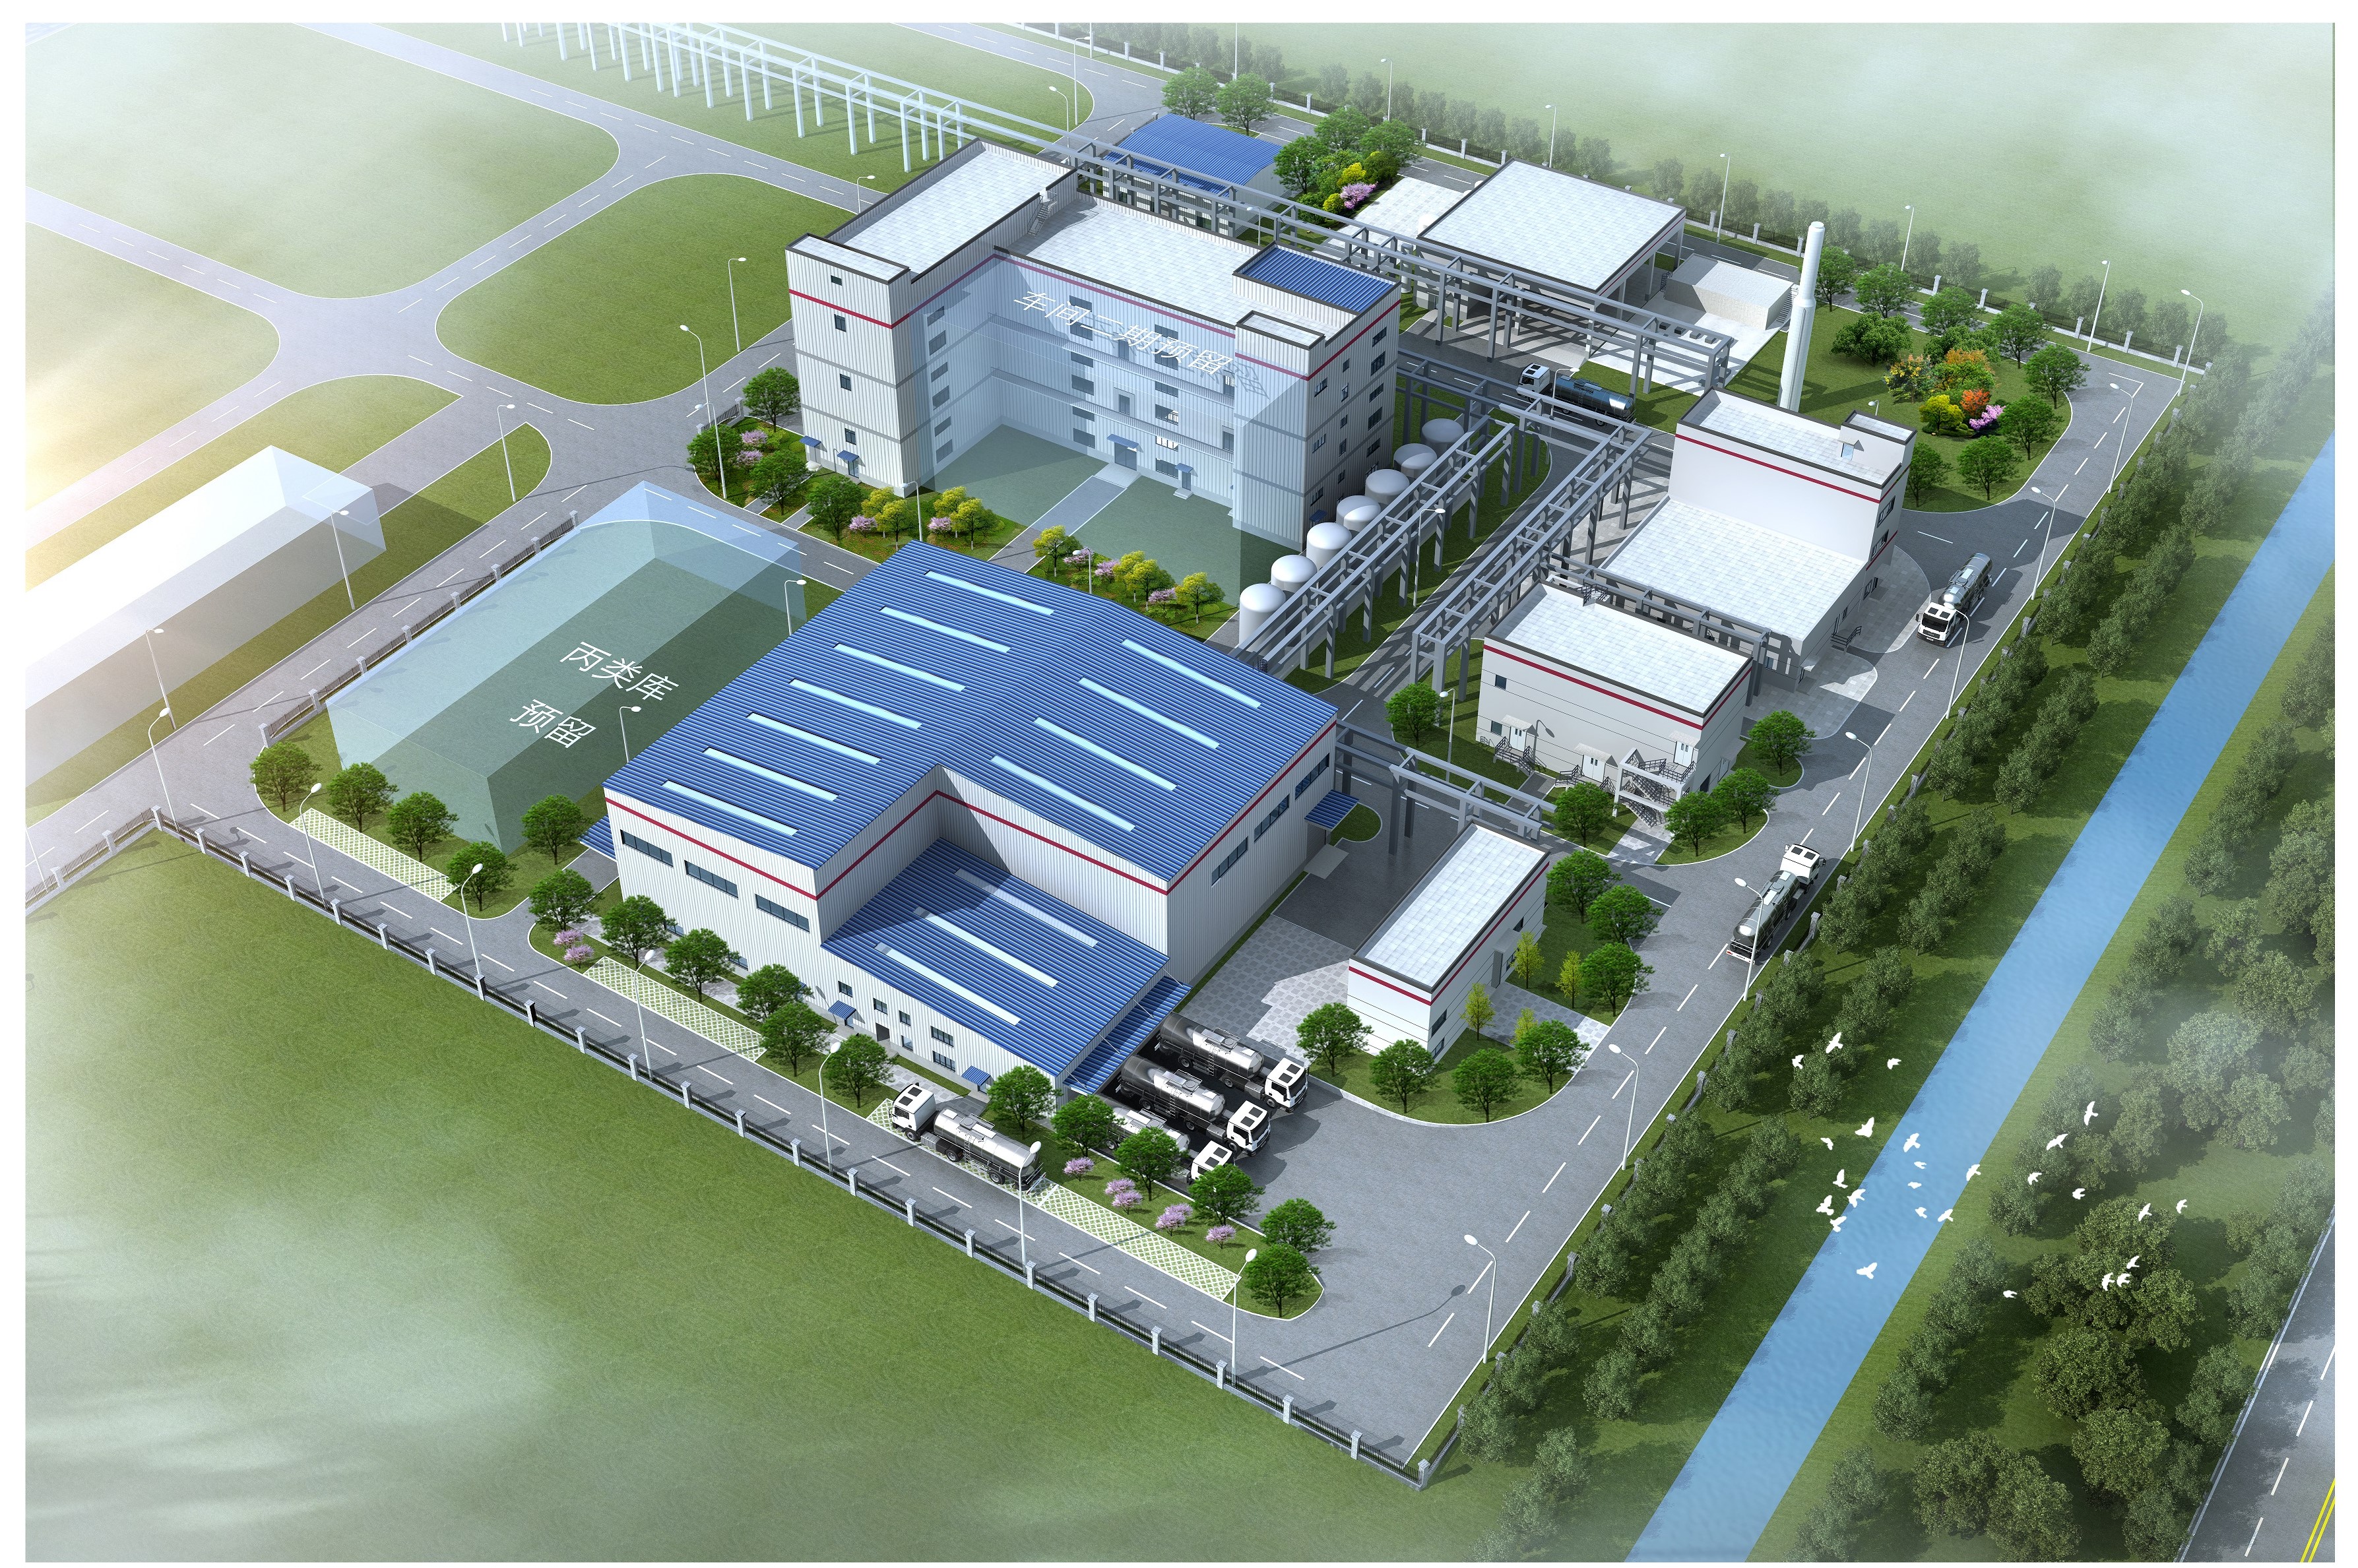 クラリアント、Exolit OPシリーズ難燃剤の生産施設を中国に建設開始。